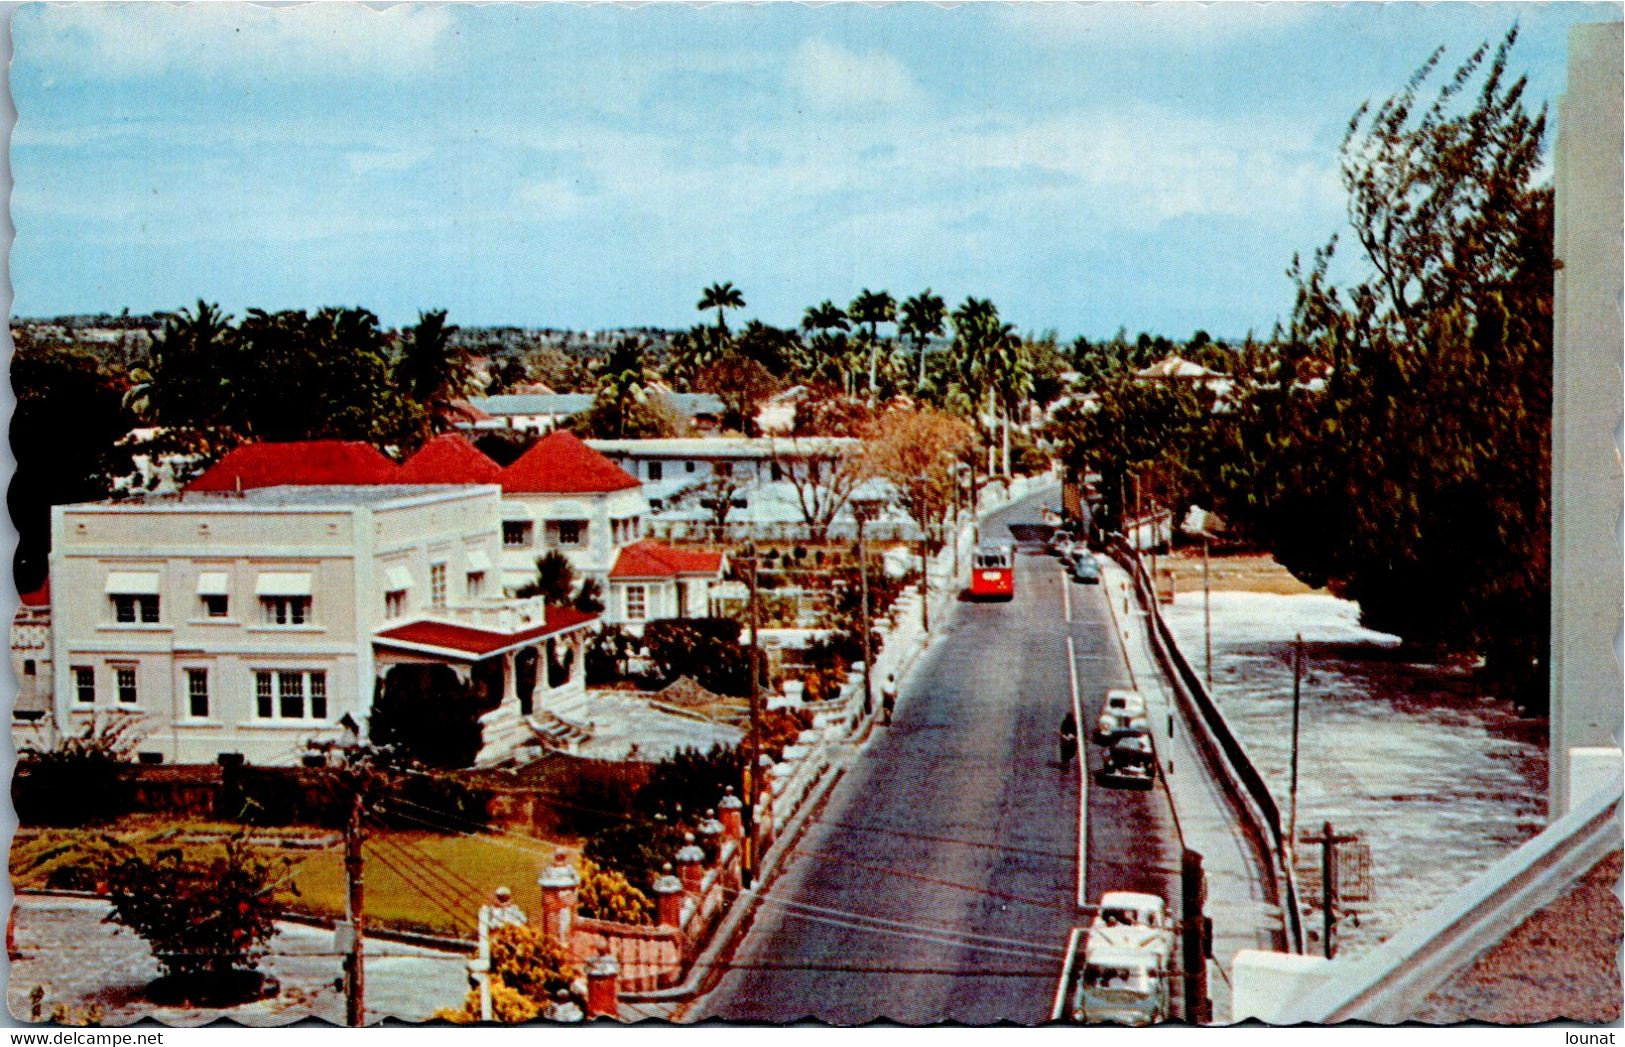 Amérique - Barbados -  Hastings District -  Ile Barbade - Barbados